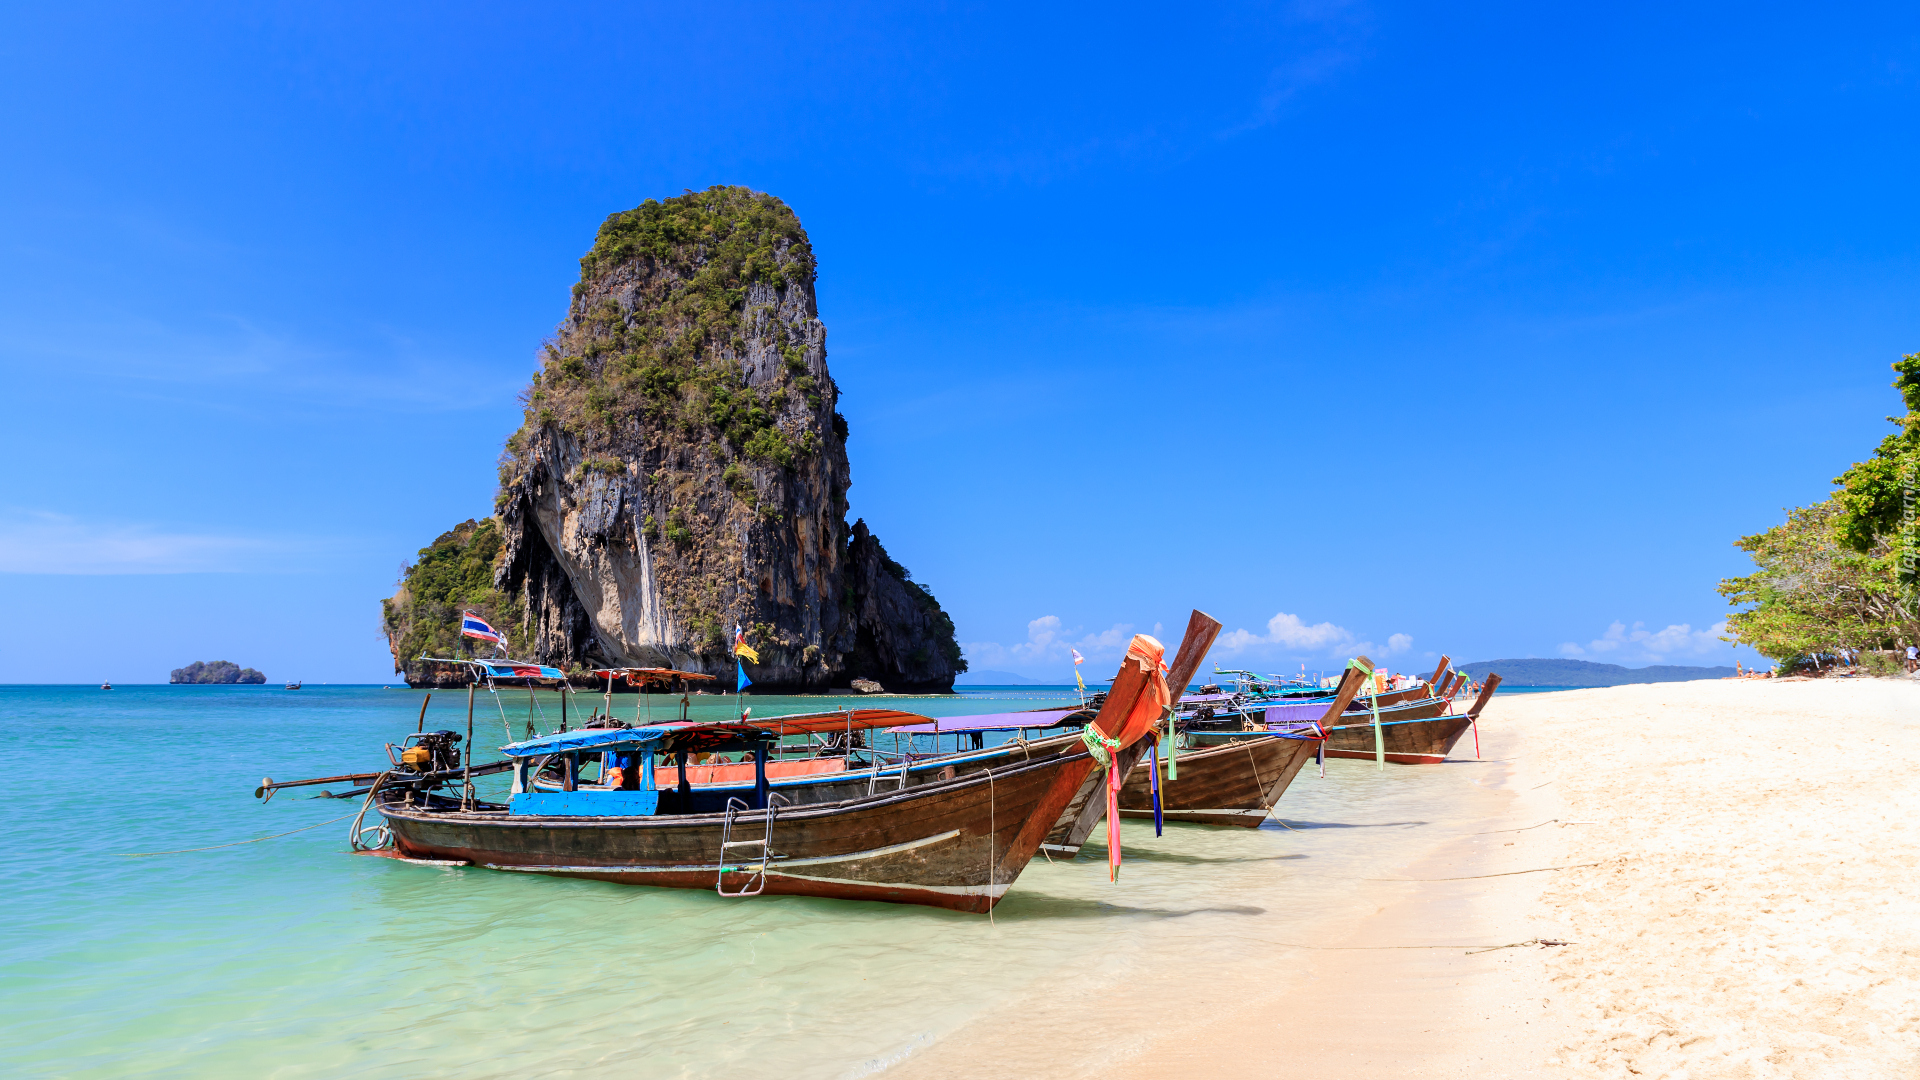 Lato, Plaża, Phra Nang Beach, Zatoka, Morze, Łódki, Wysepki, Skały, Drzewa, Prowincja Krabi, Tajlandia